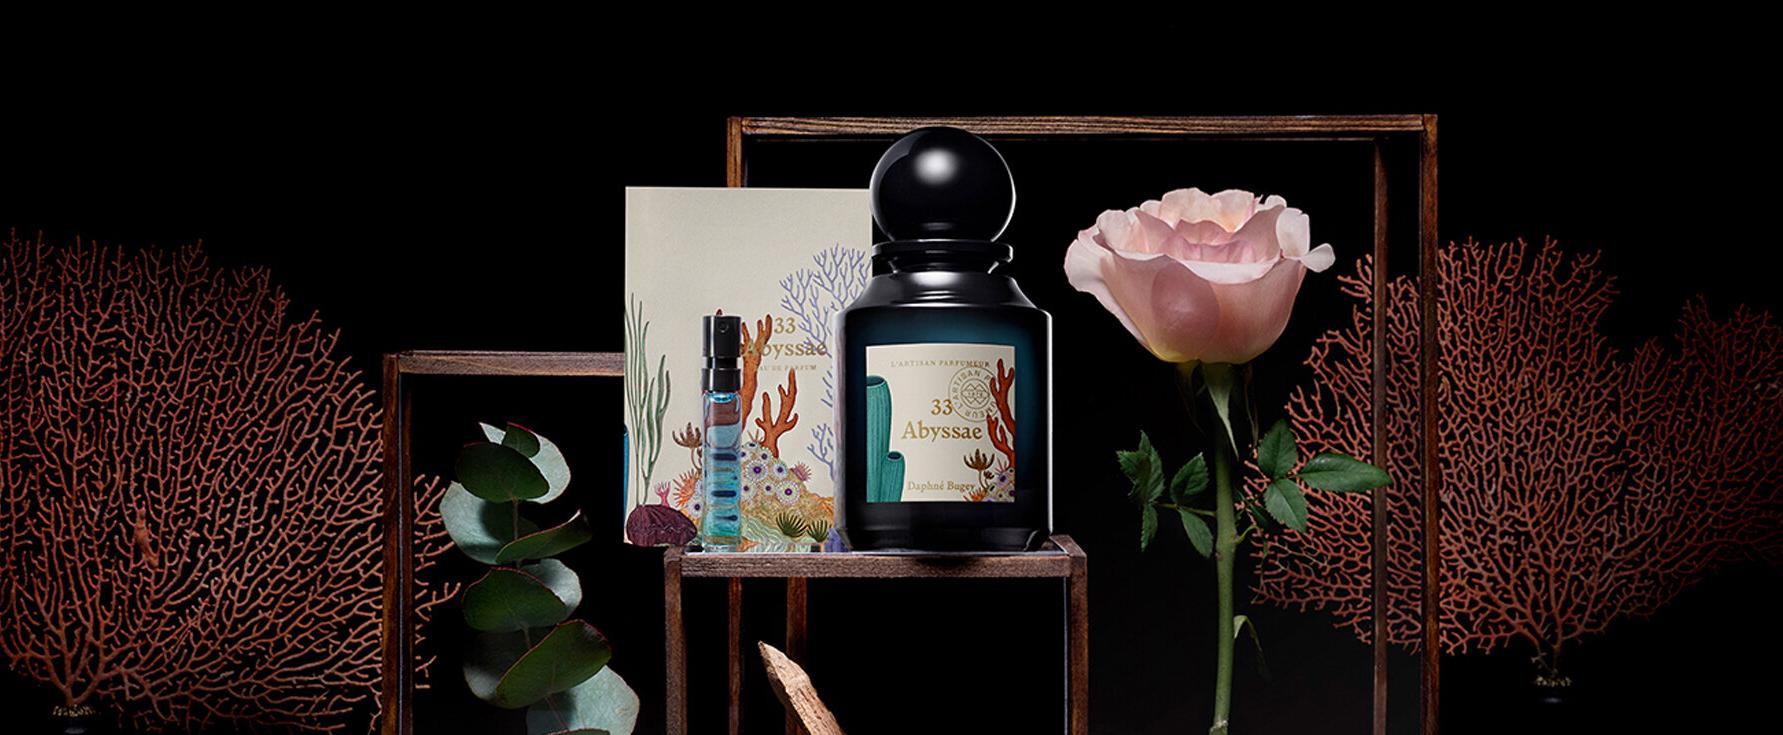 „33 Abyssae“ - Neuer Duft von L'Artisan Parfumeur